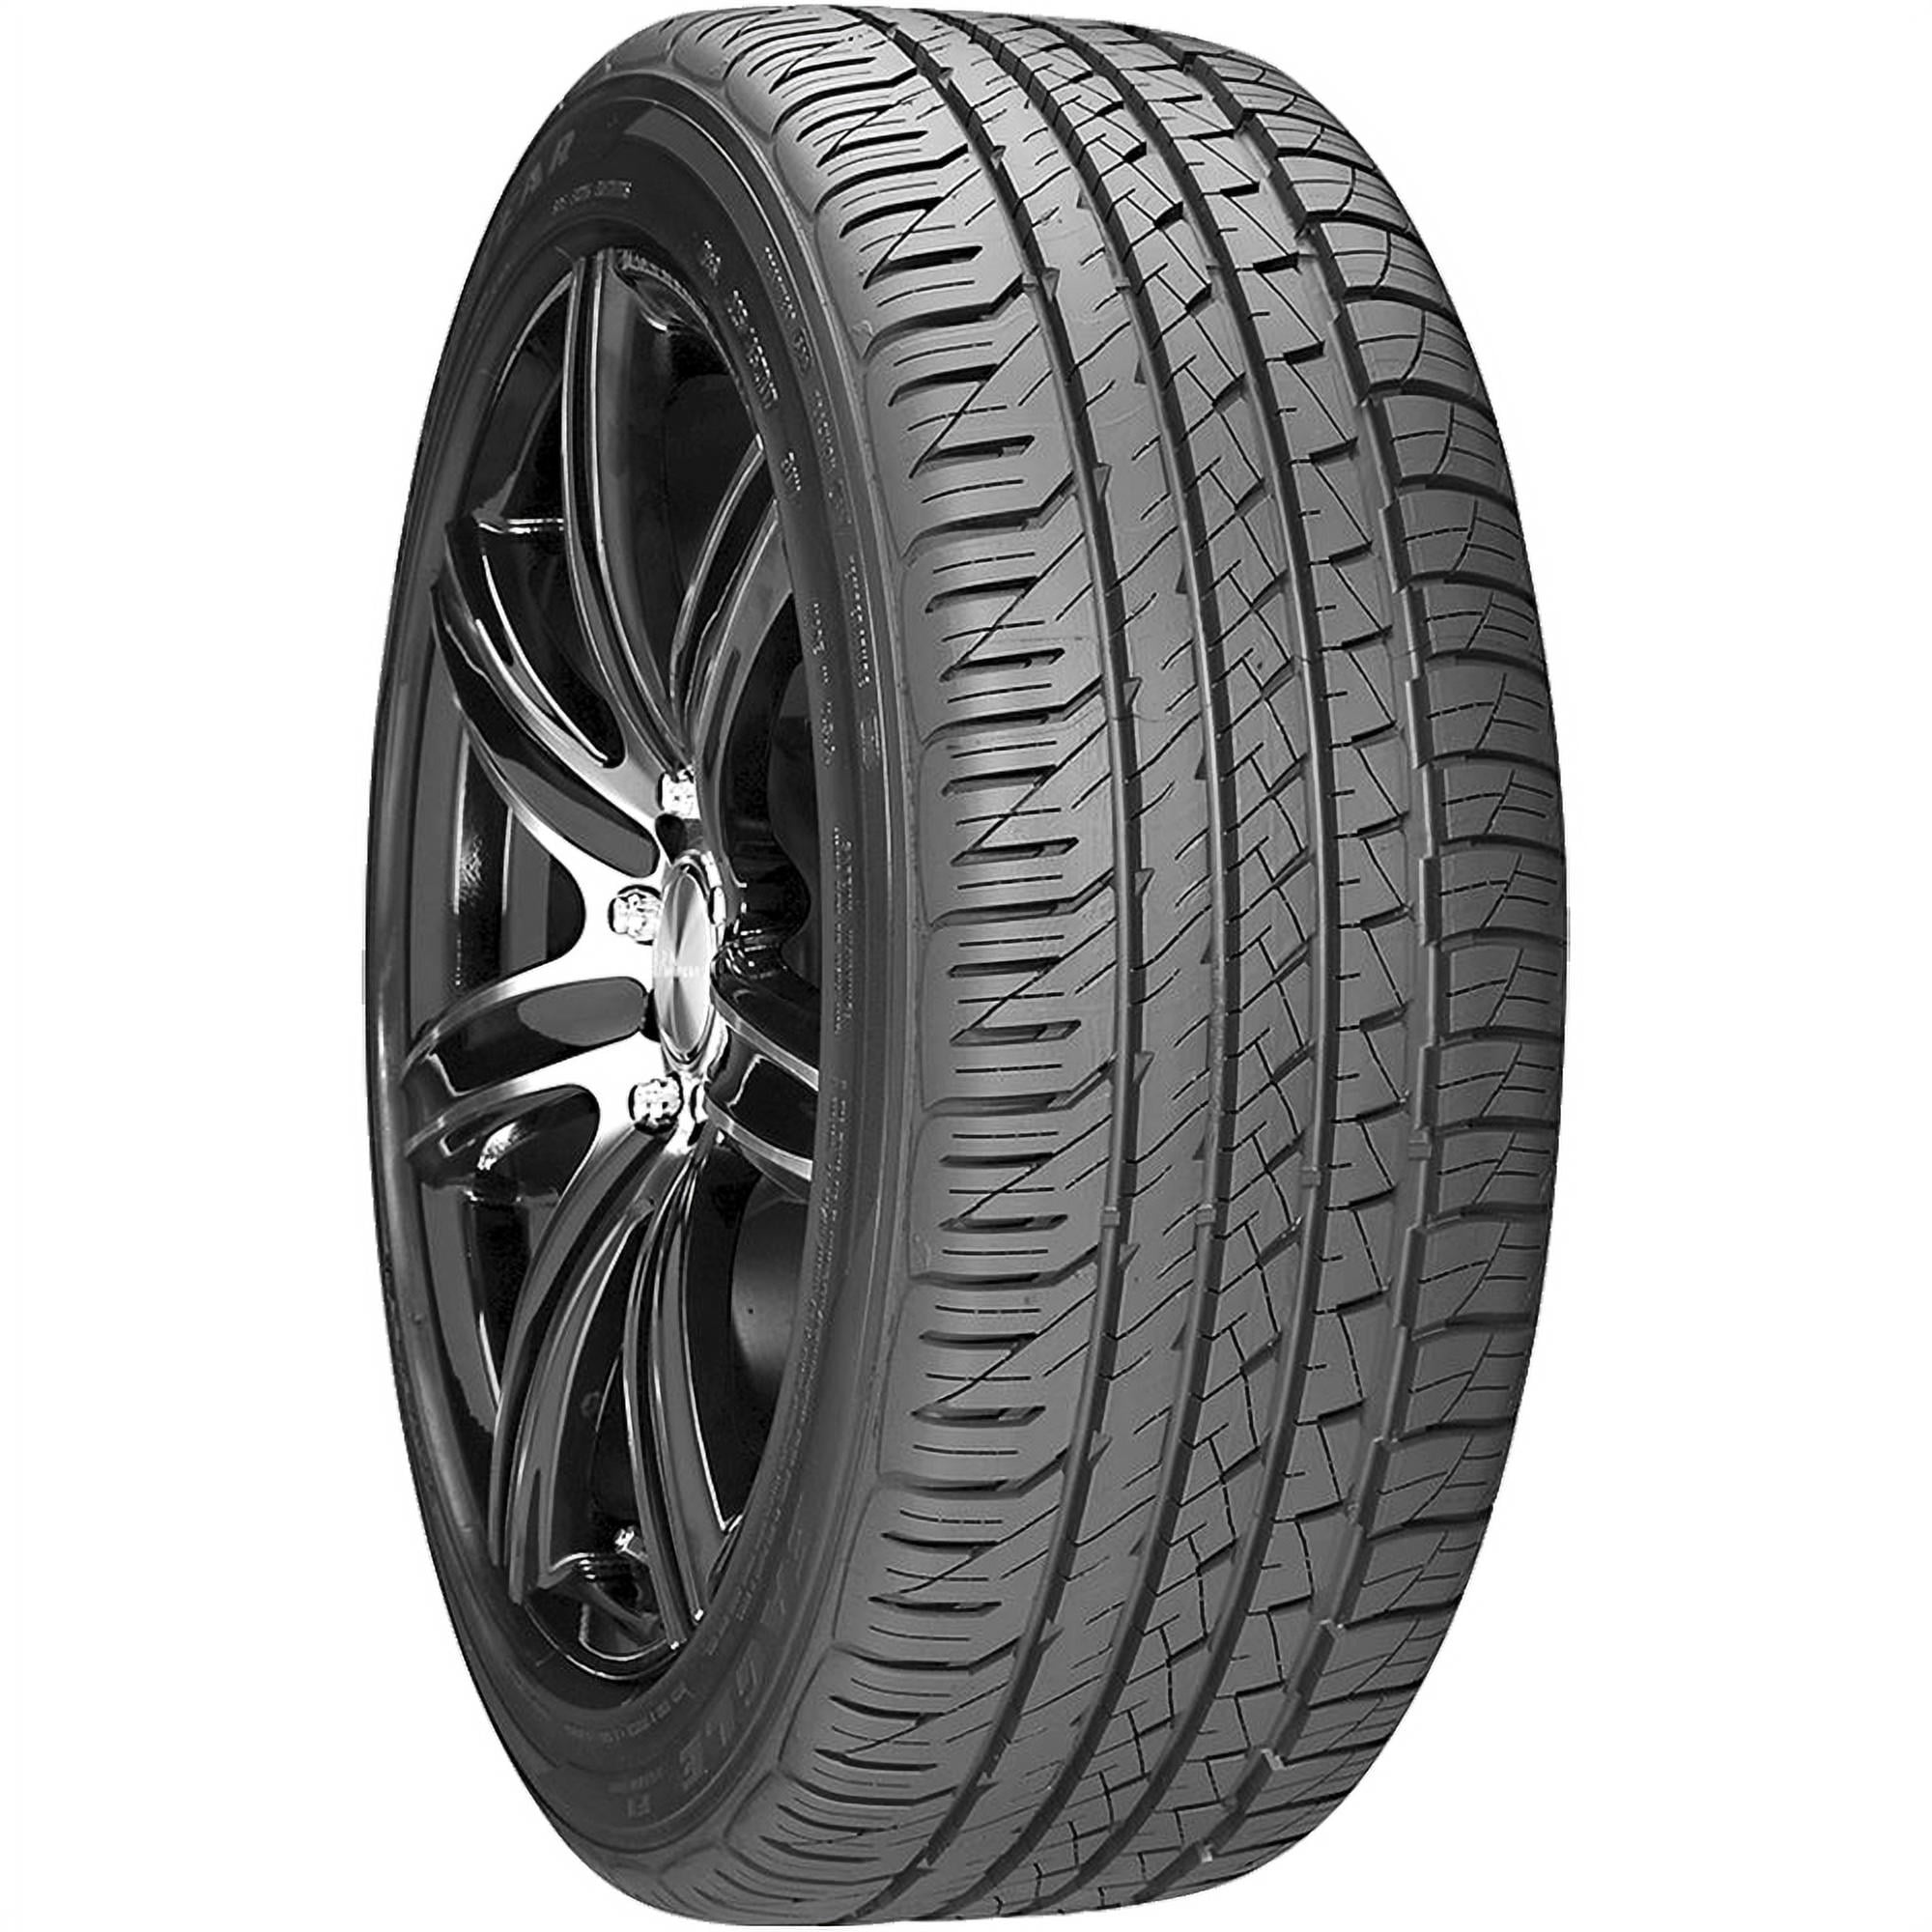 W Asymmetric 255/45R18 Goodyear F1 Eagle All-Season 99 Tire